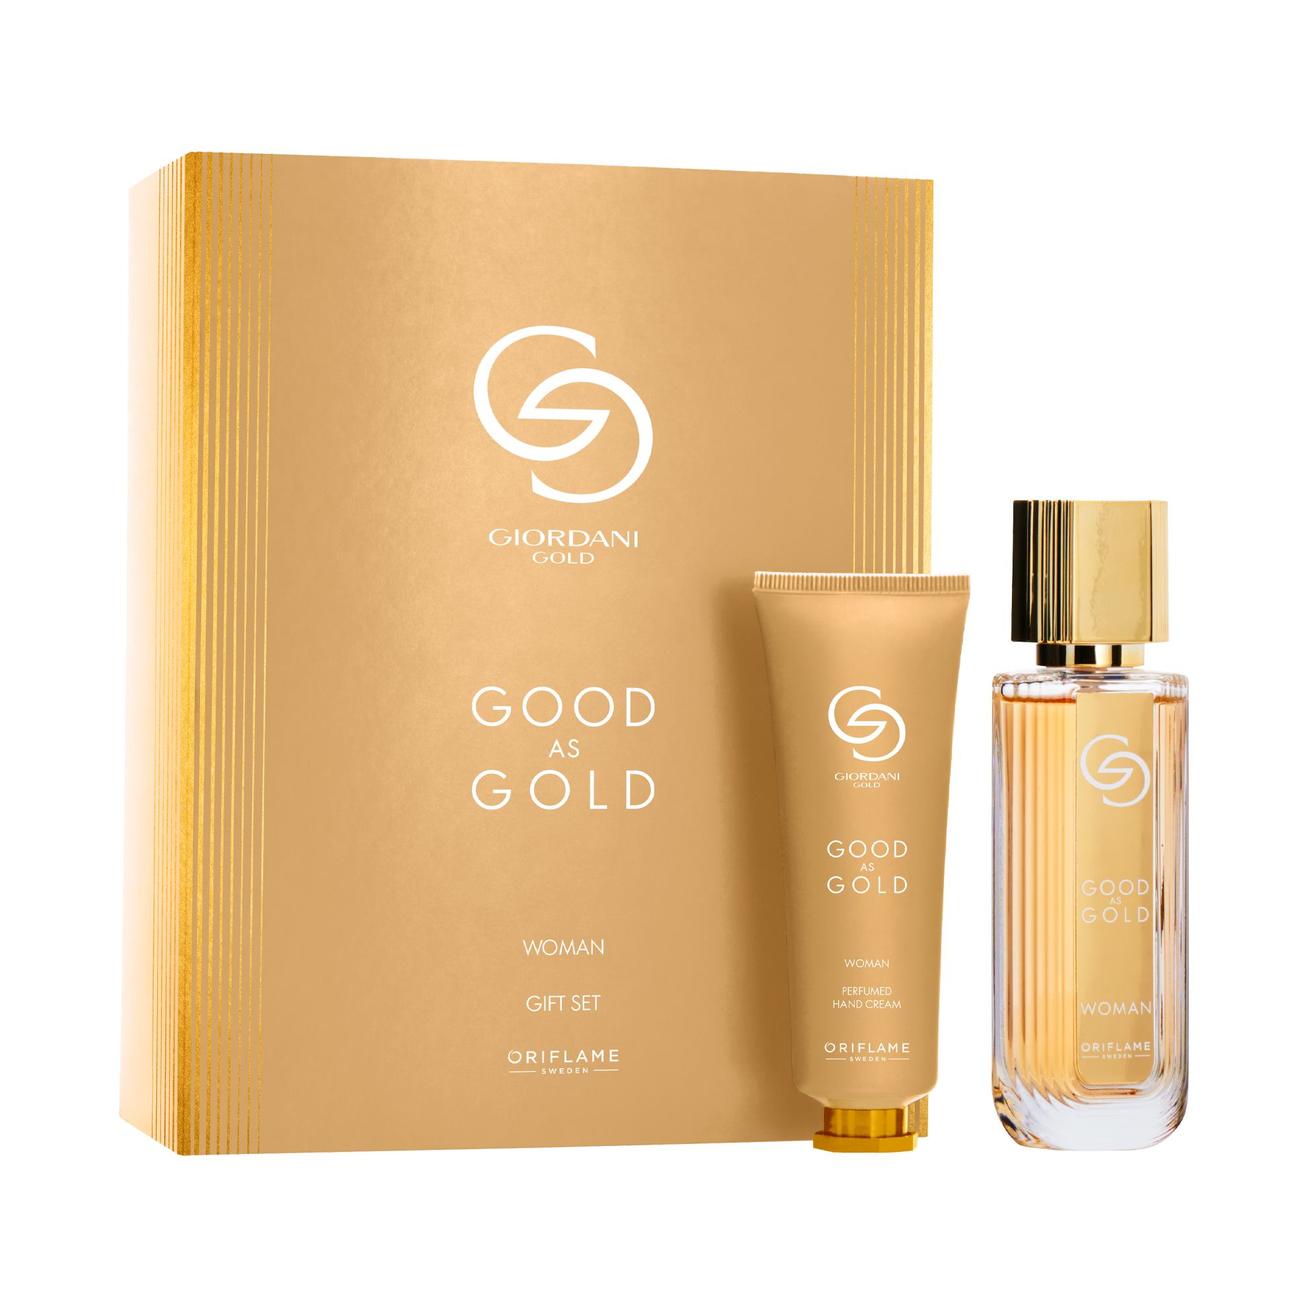 Aanbieding van Good as Gold Woman Gift Set voor 34,49€ bij Oriflame